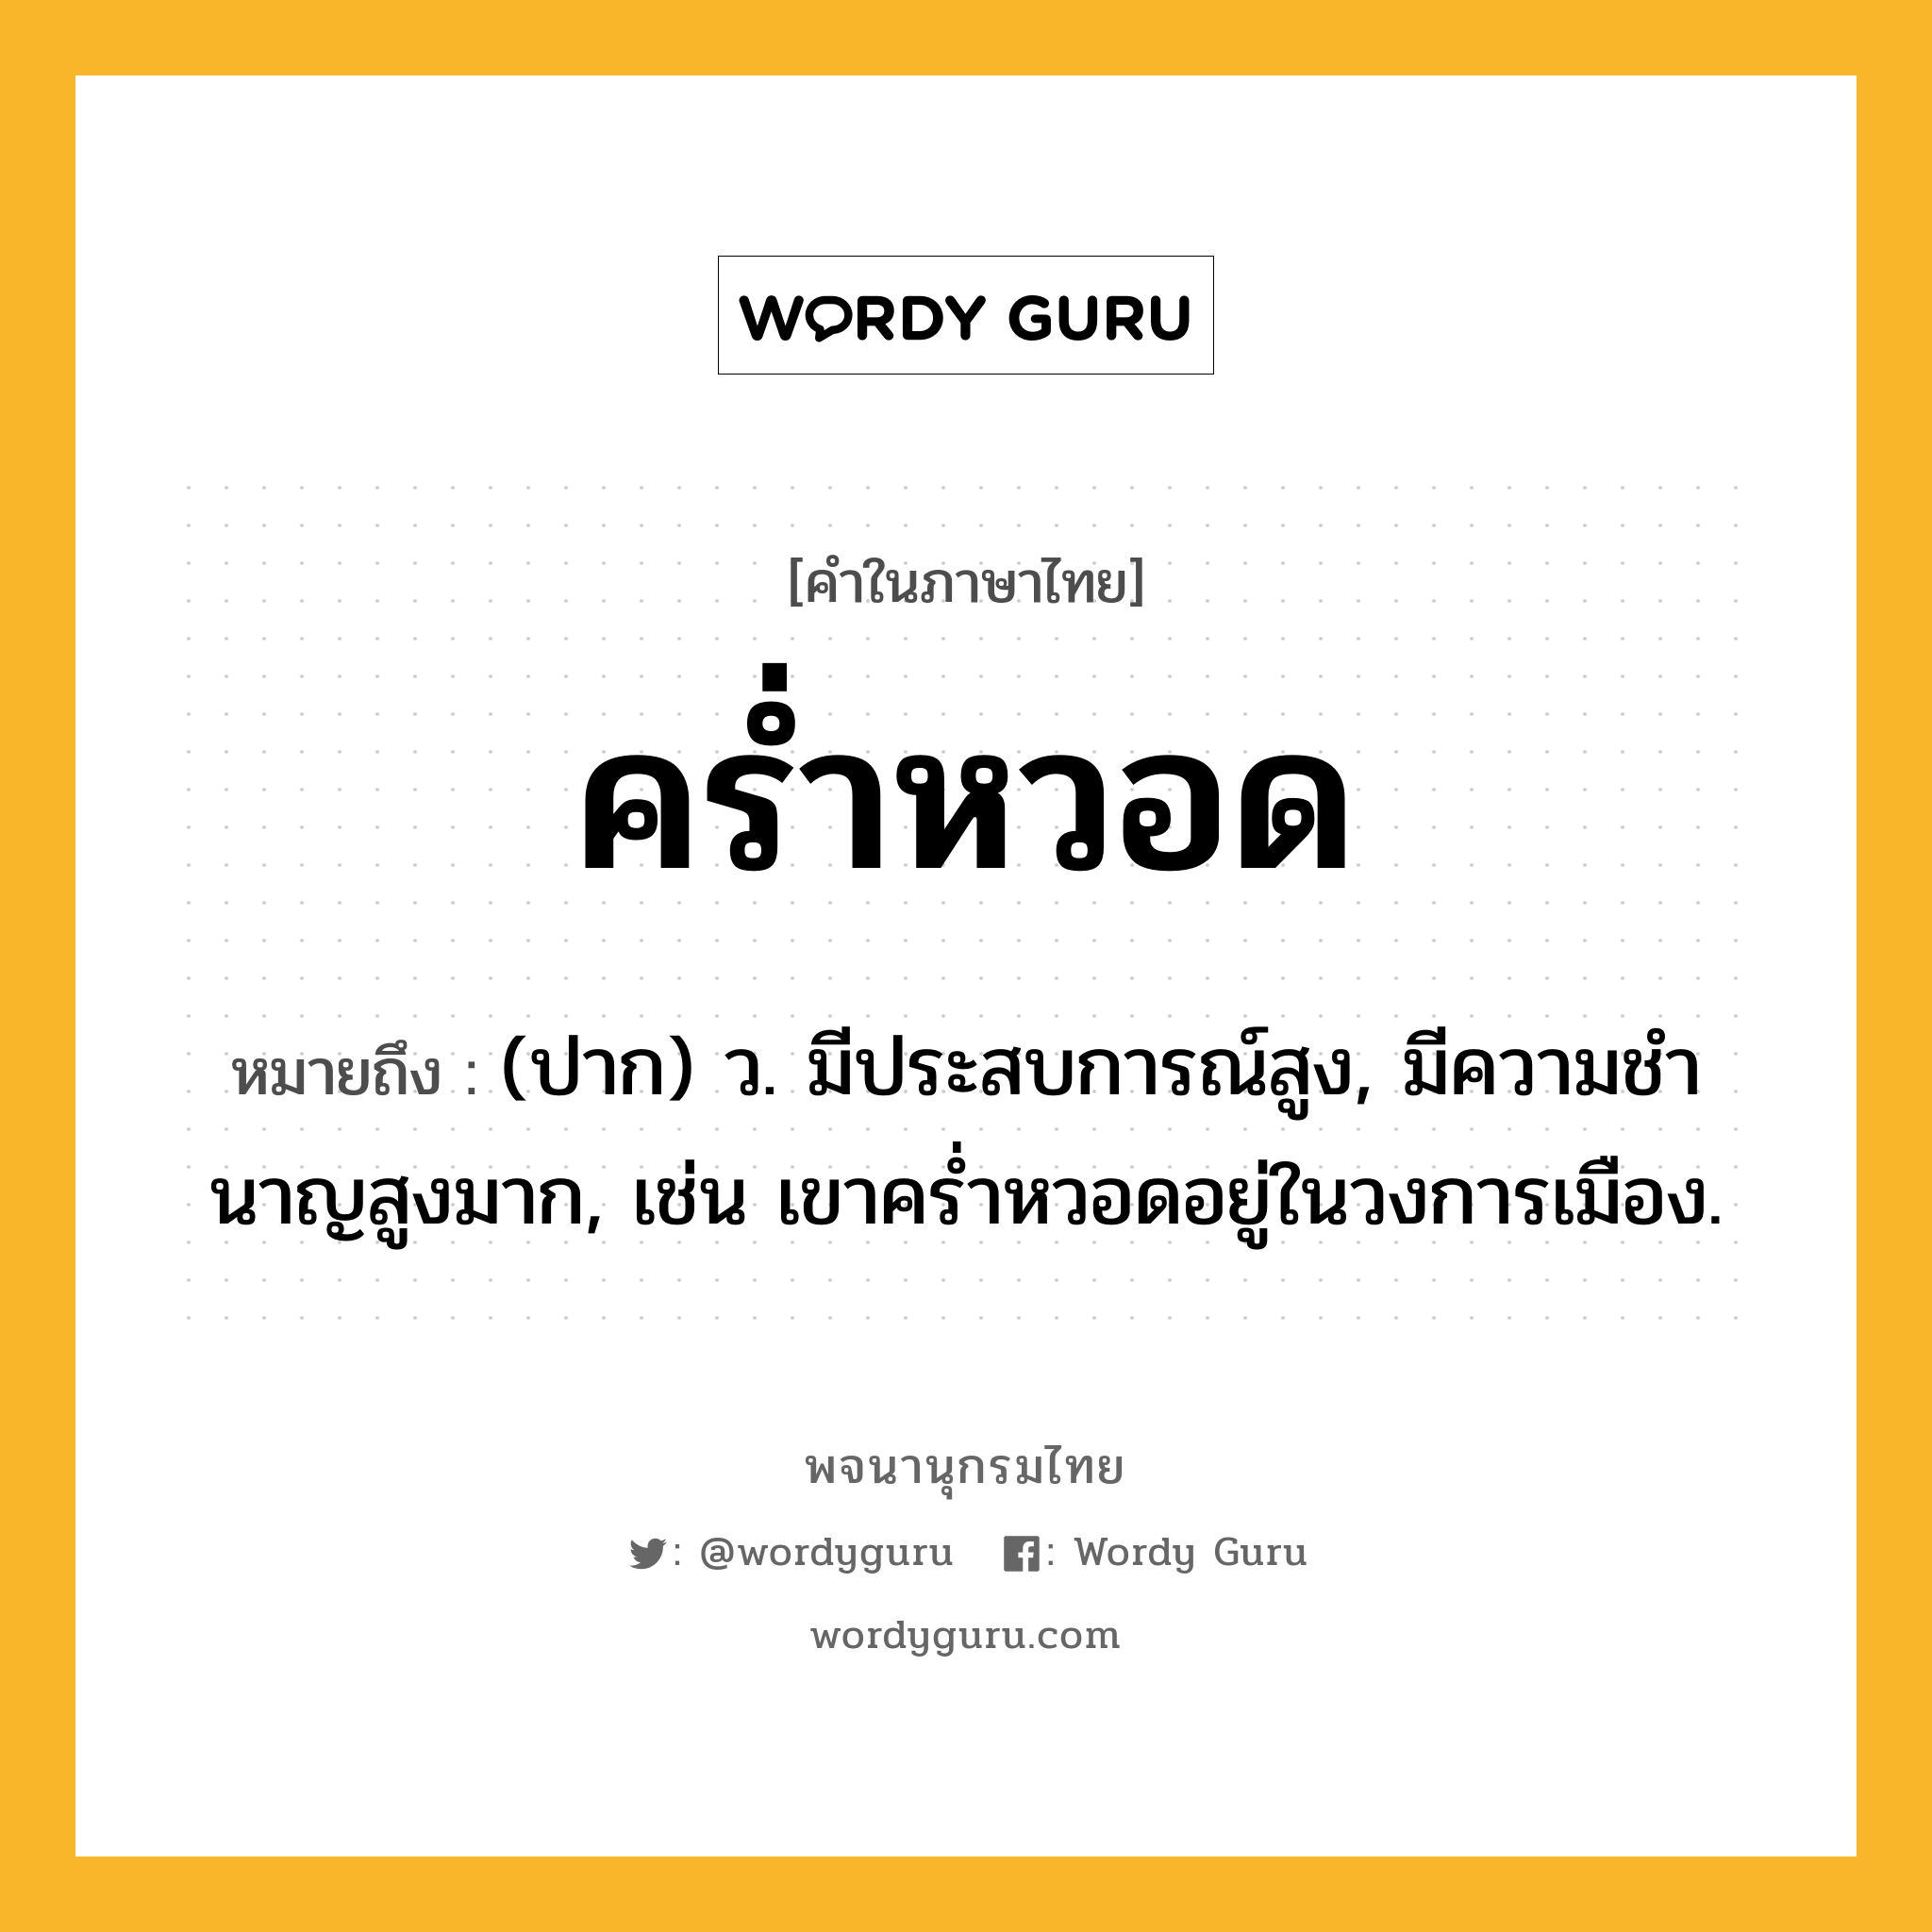 คร่ำหวอด ความหมาย หมายถึงอะไร?, คำในภาษาไทย คร่ำหวอด หมายถึง (ปาก) ว. มีประสบการณ์สูง, มีความชํานาญสูงมาก, เช่น เขาคร่ำหวอดอยู่ในวงการเมือง.